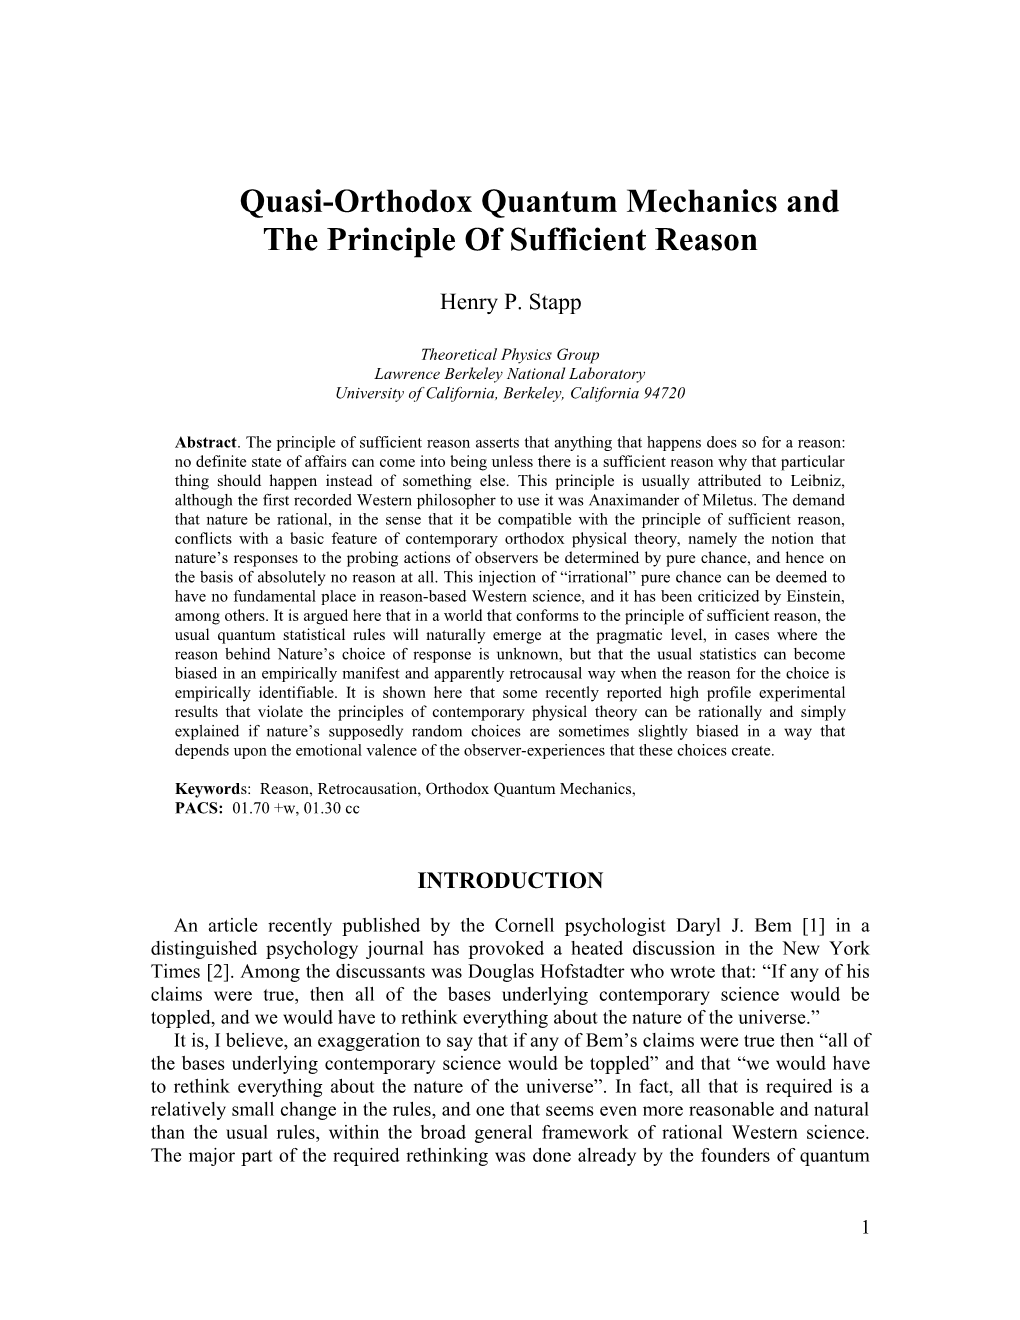 Quasi-Orthodoxquantum Mechanics and the Principle of Sufficient Reason